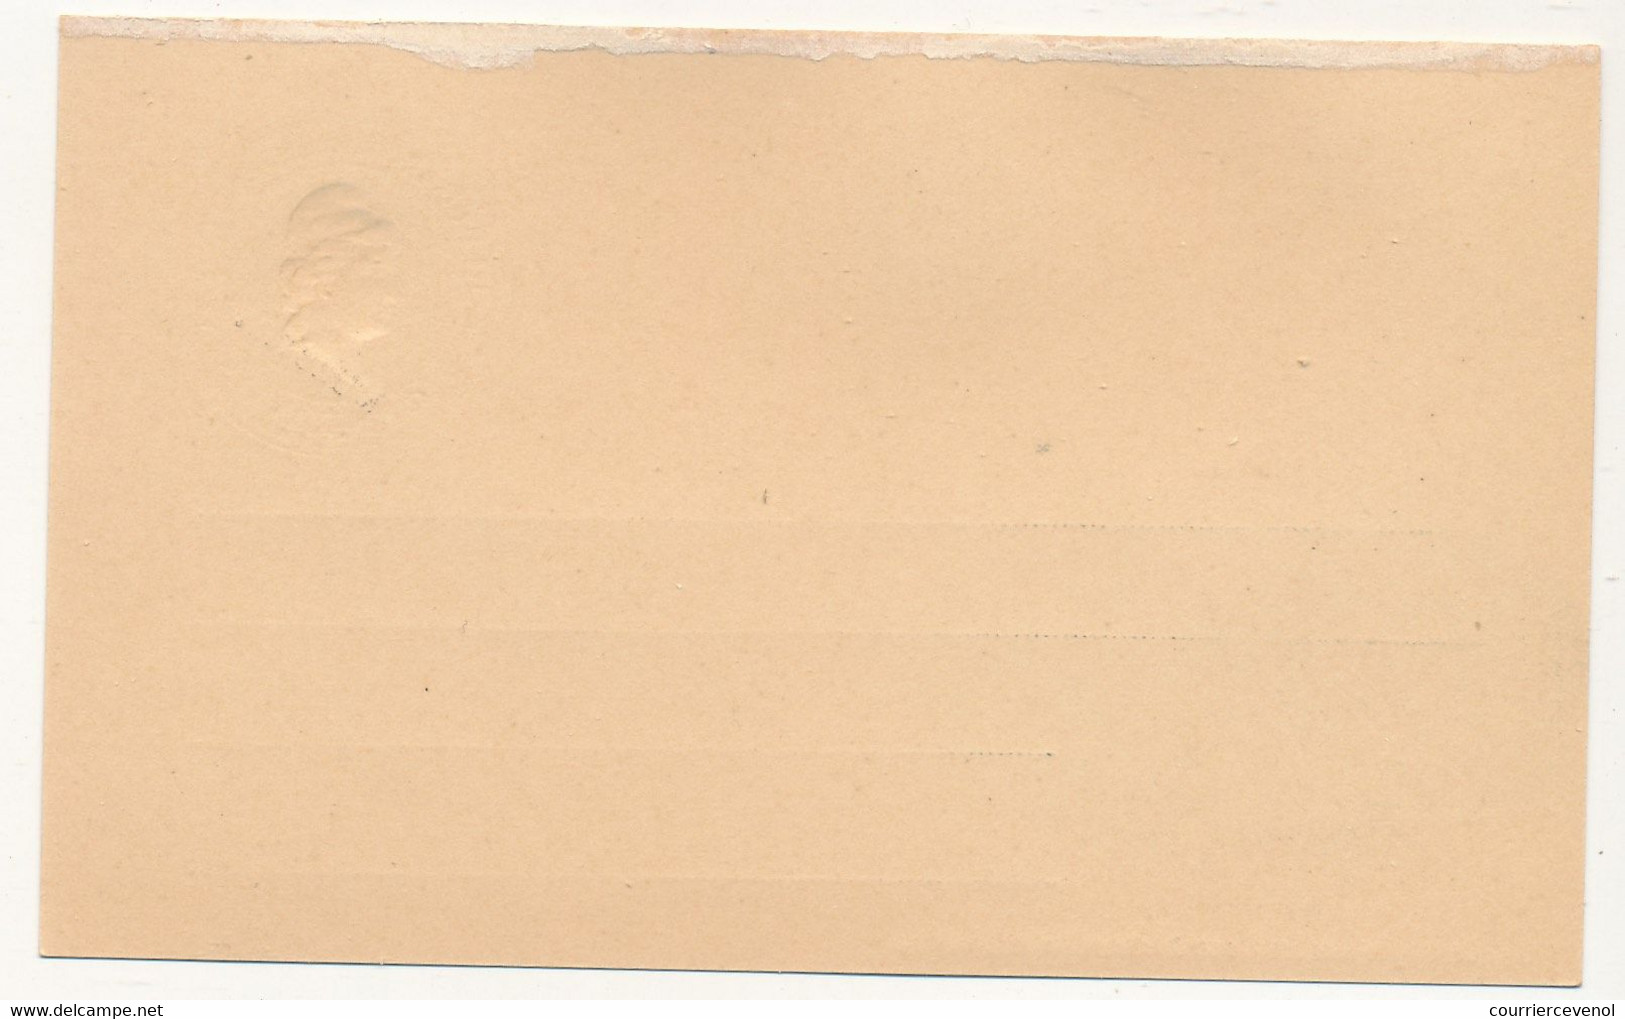 ARGENTINE - Entier Postal - Carte Postale - 3 Centavos (MUESTRA) - Calle De Santa Fe - Postal Stationery